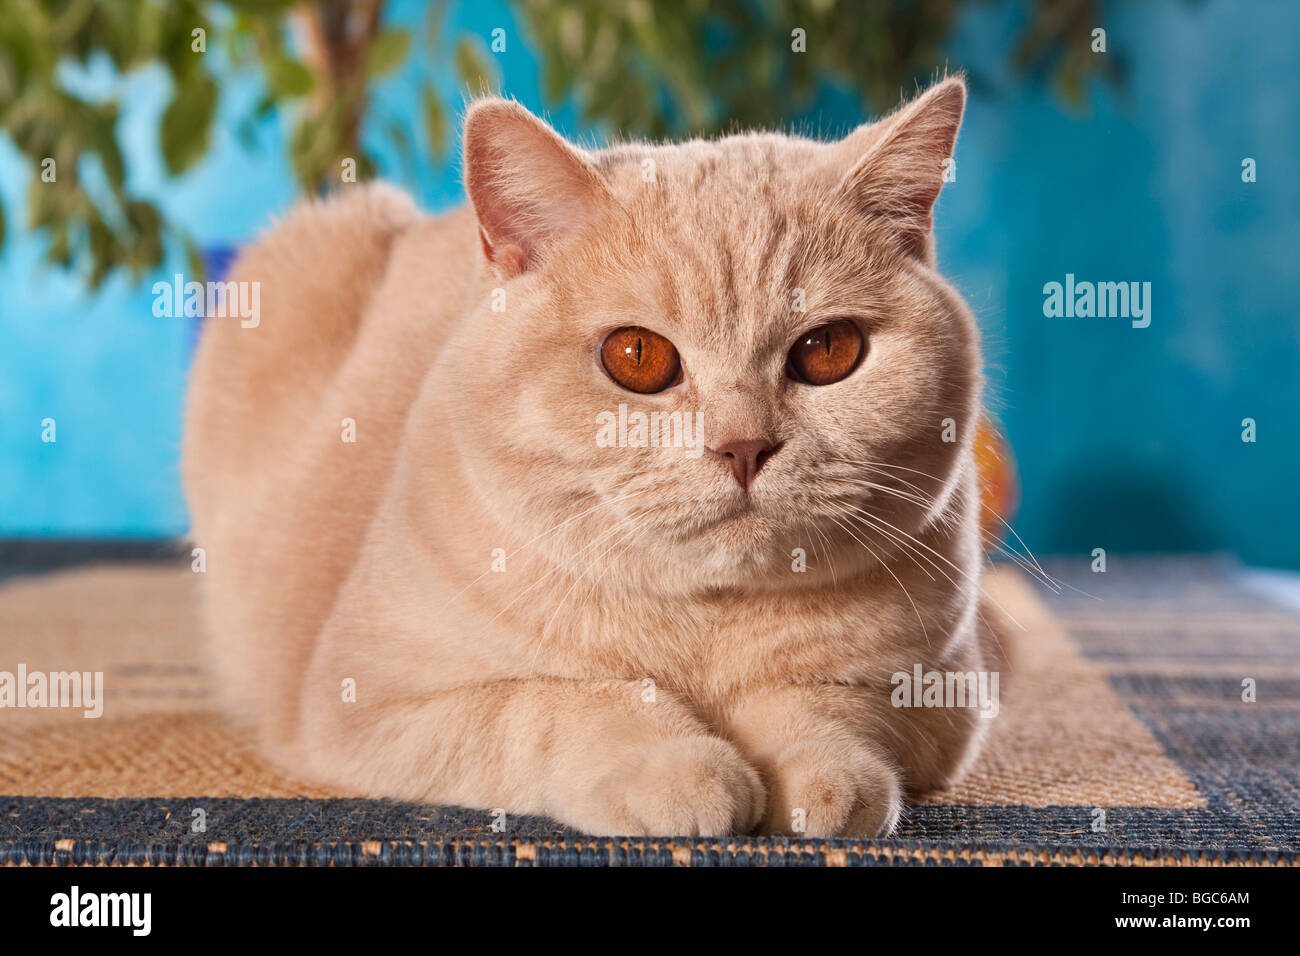 British Shorthair gato tumbado Foto de stock